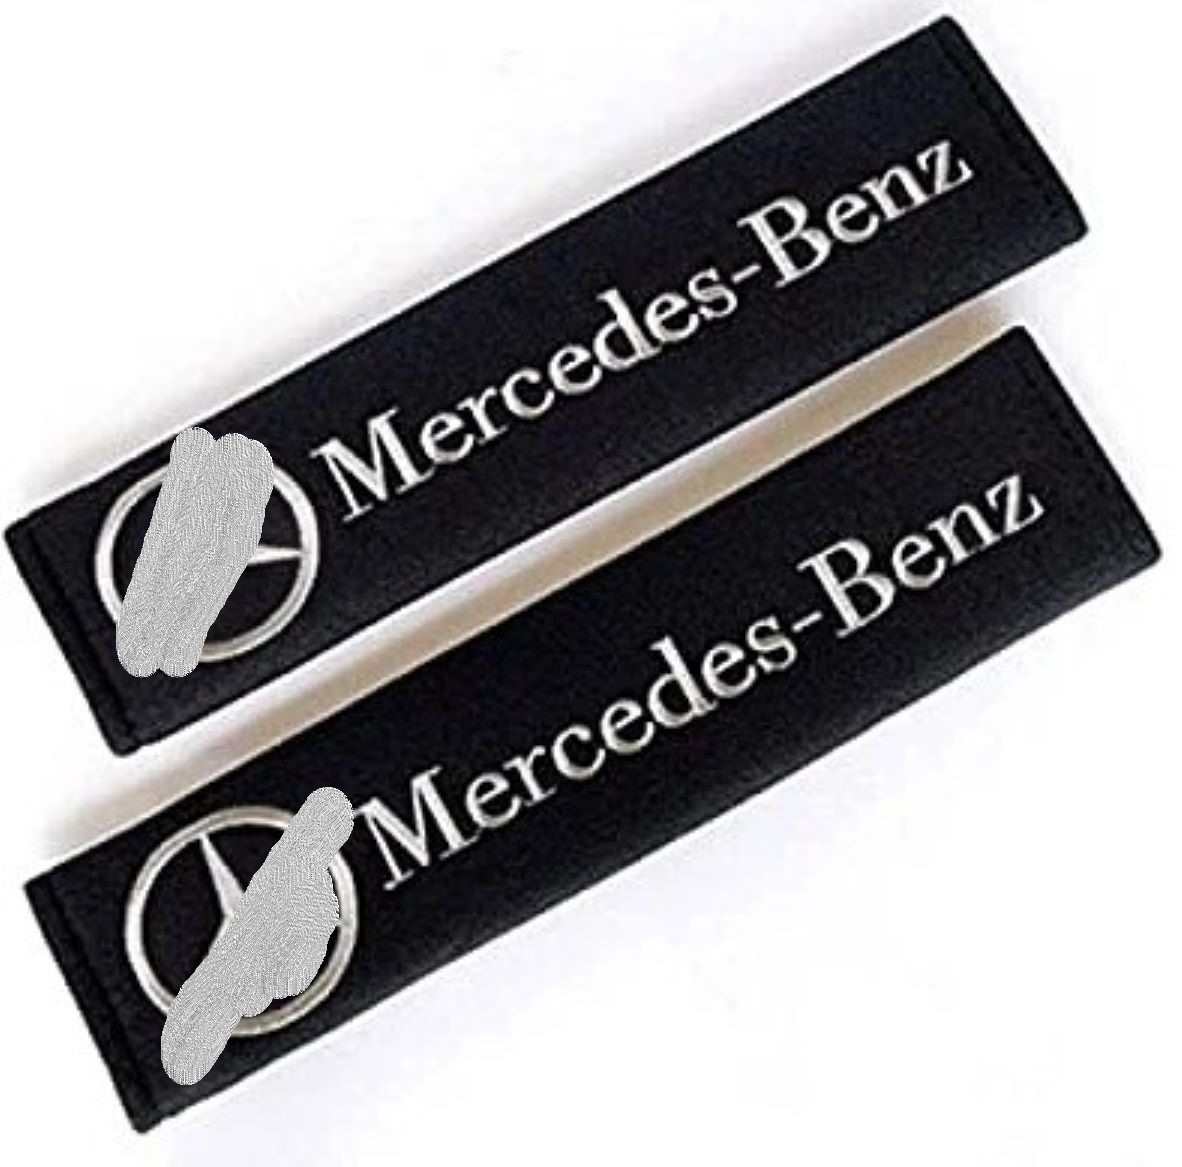 Mercedes Embroidered Logo Car Seat Belt Cover Seatbelt Shoulder Pad 2 pcs - $12.99